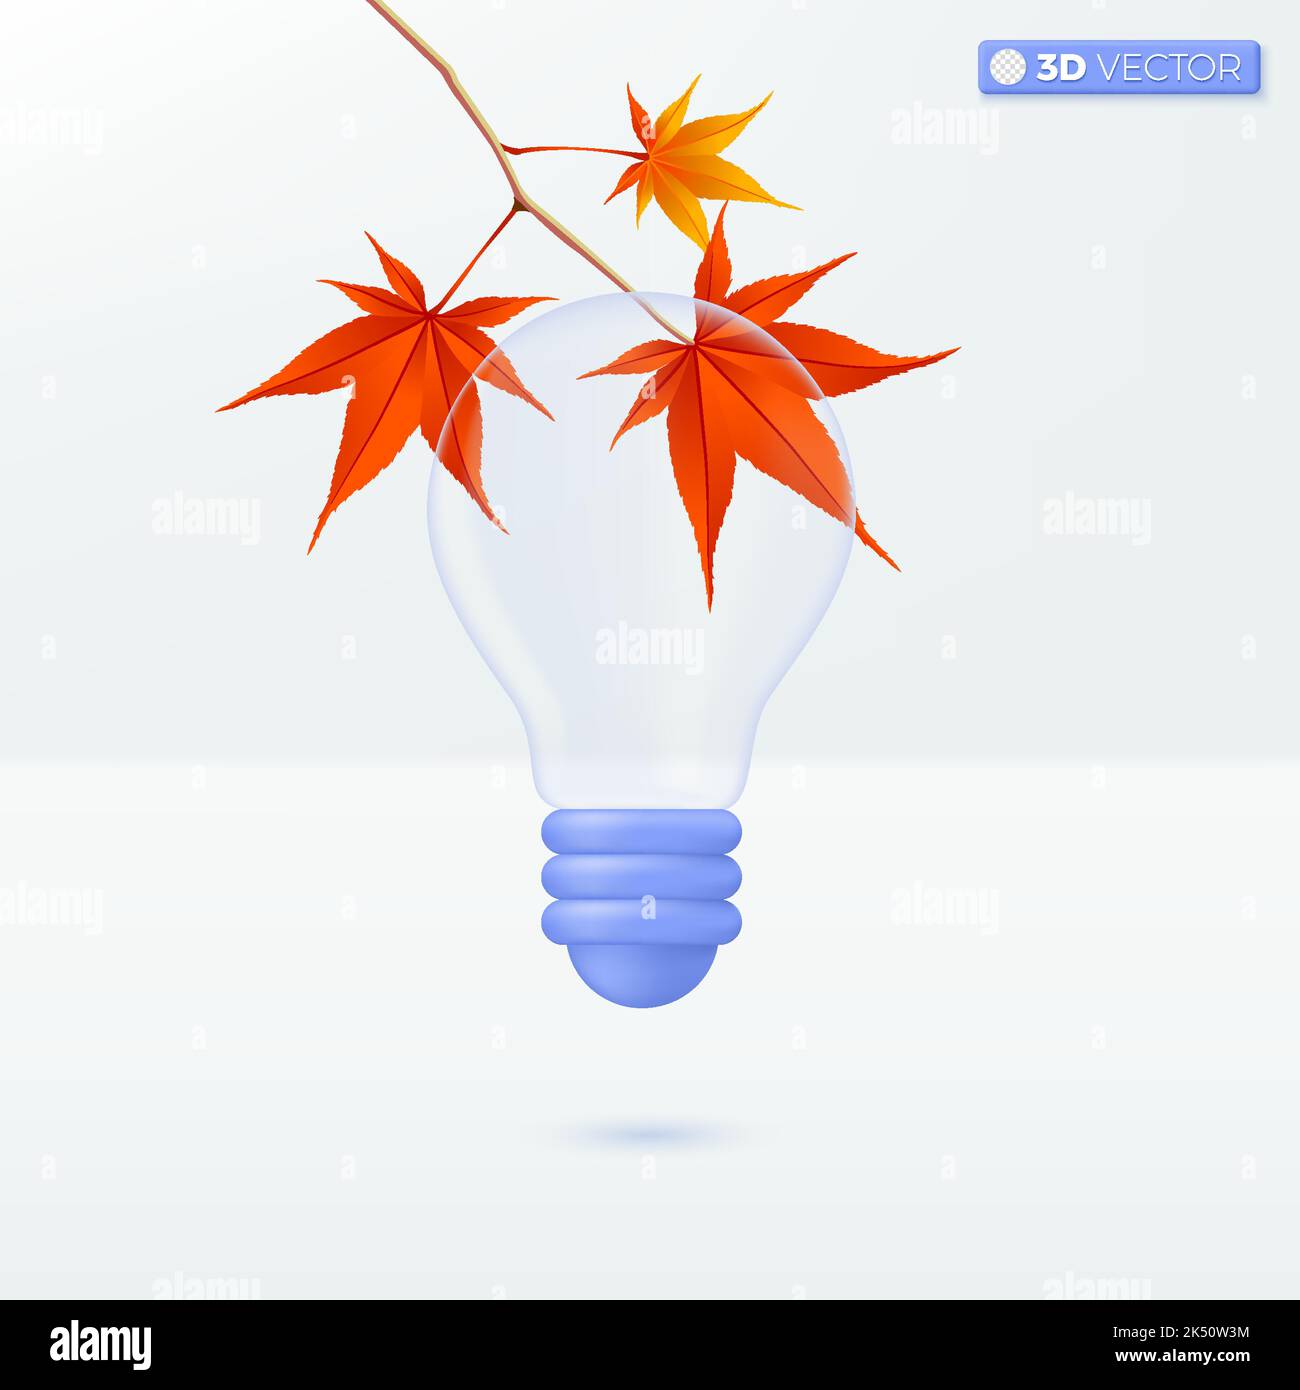 Transparence de l'ampoule et méle rouge. Brainstorming, développement, métaphore de l'icône de l'idée. 3D illustrations vectorielles isolées. Dessin animé pastel minimaliste Illustration de Vecteur